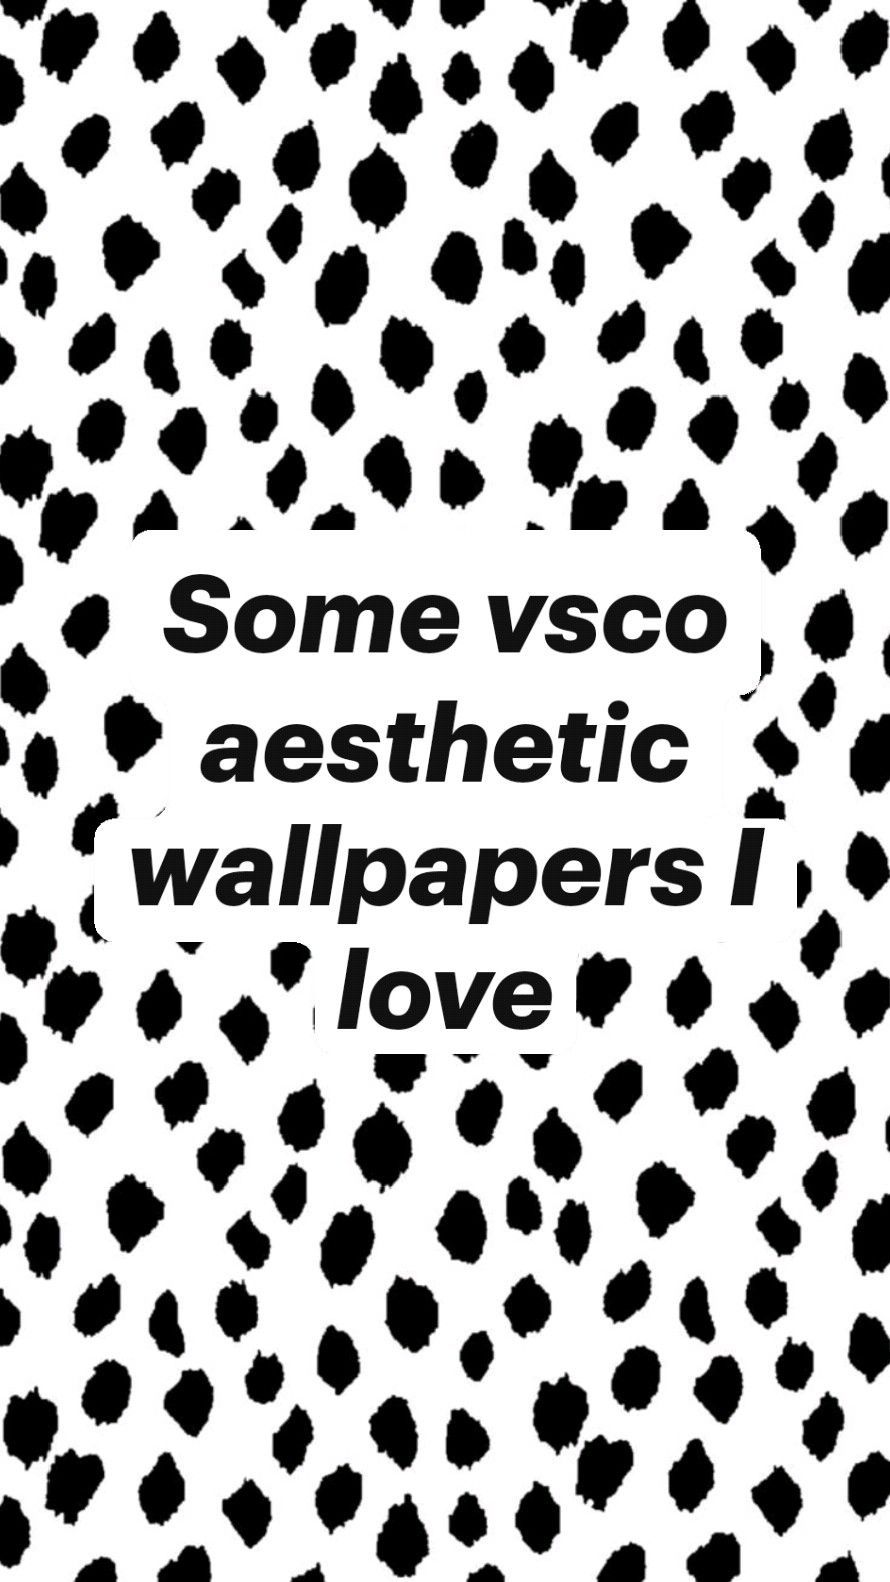 Some vsco aesthetic wallpaper I love